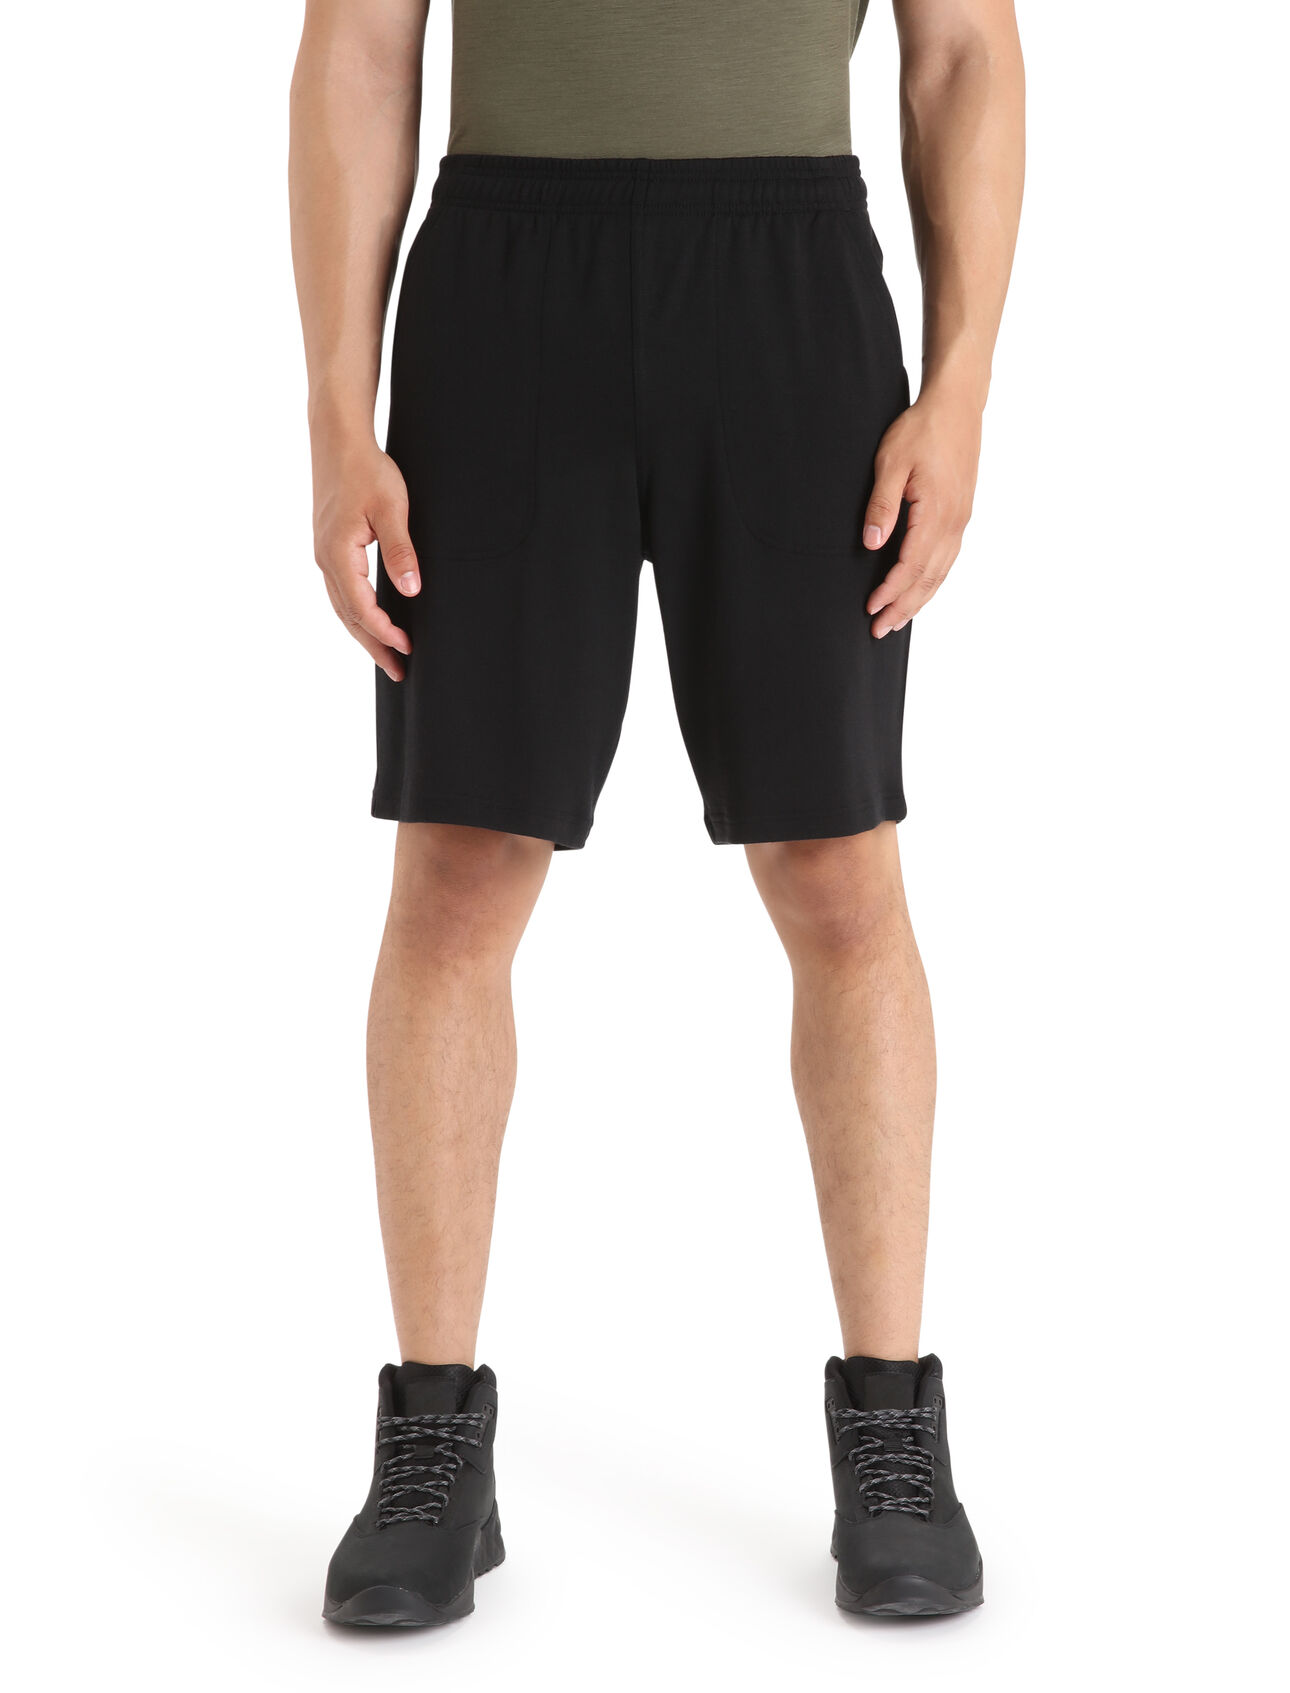 Herr Shifter shorts i merino  Shifter shorts är ett par klassiska mjukisshorts i modern tappning tack vare det mjuka frottématerialet i 100% merinoull som erbjuder en utmärkt vardagskomfort. 